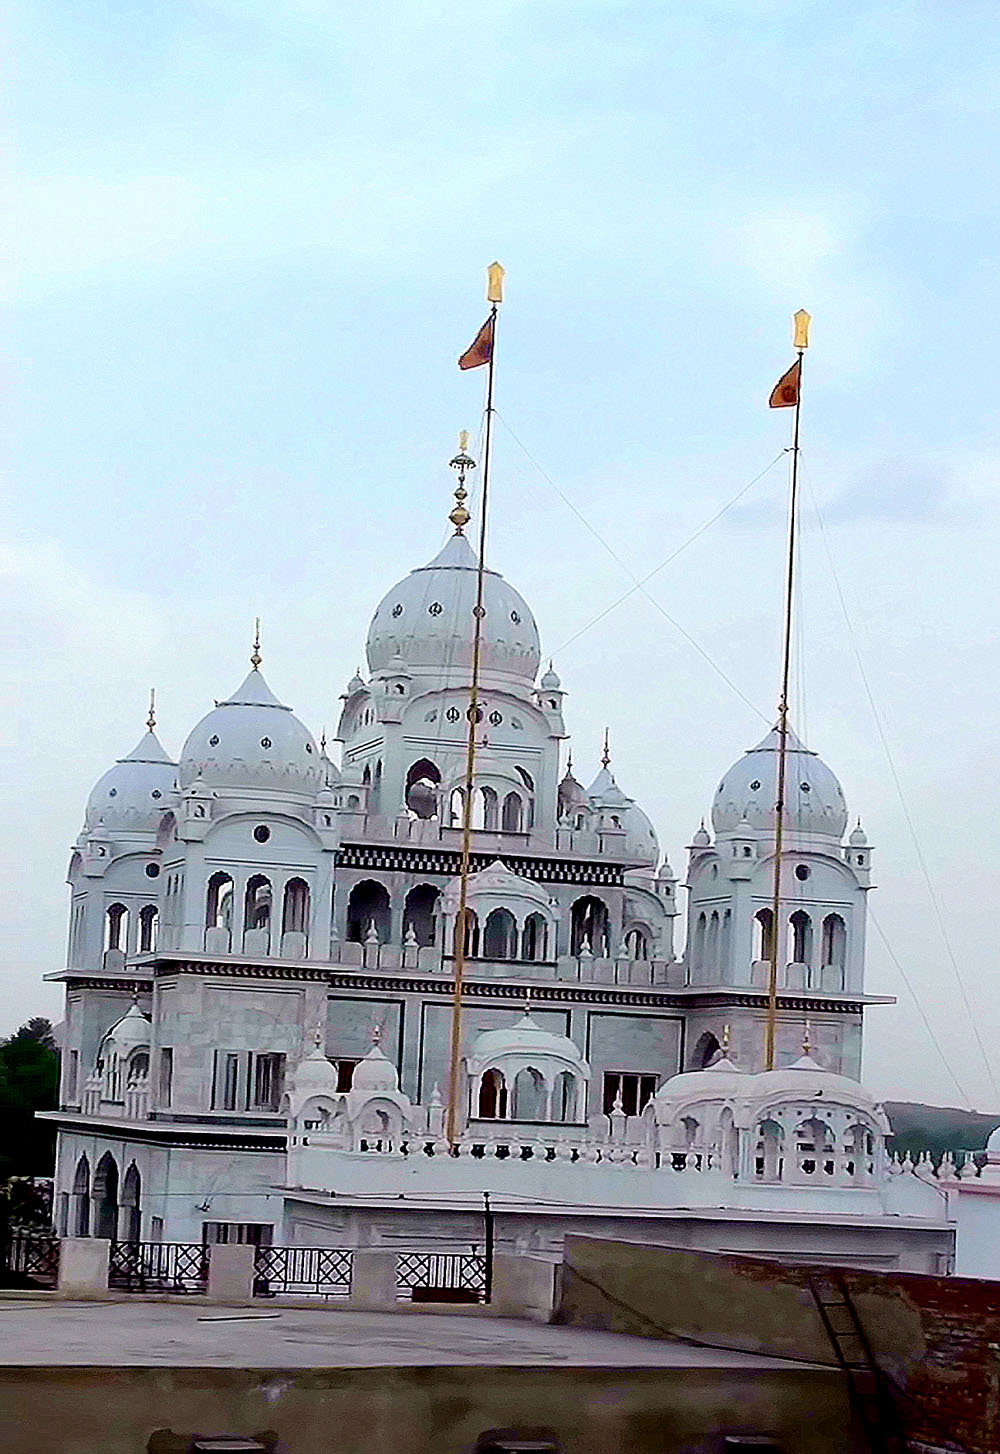 Gurudwara Singh Sabha – Pushkar